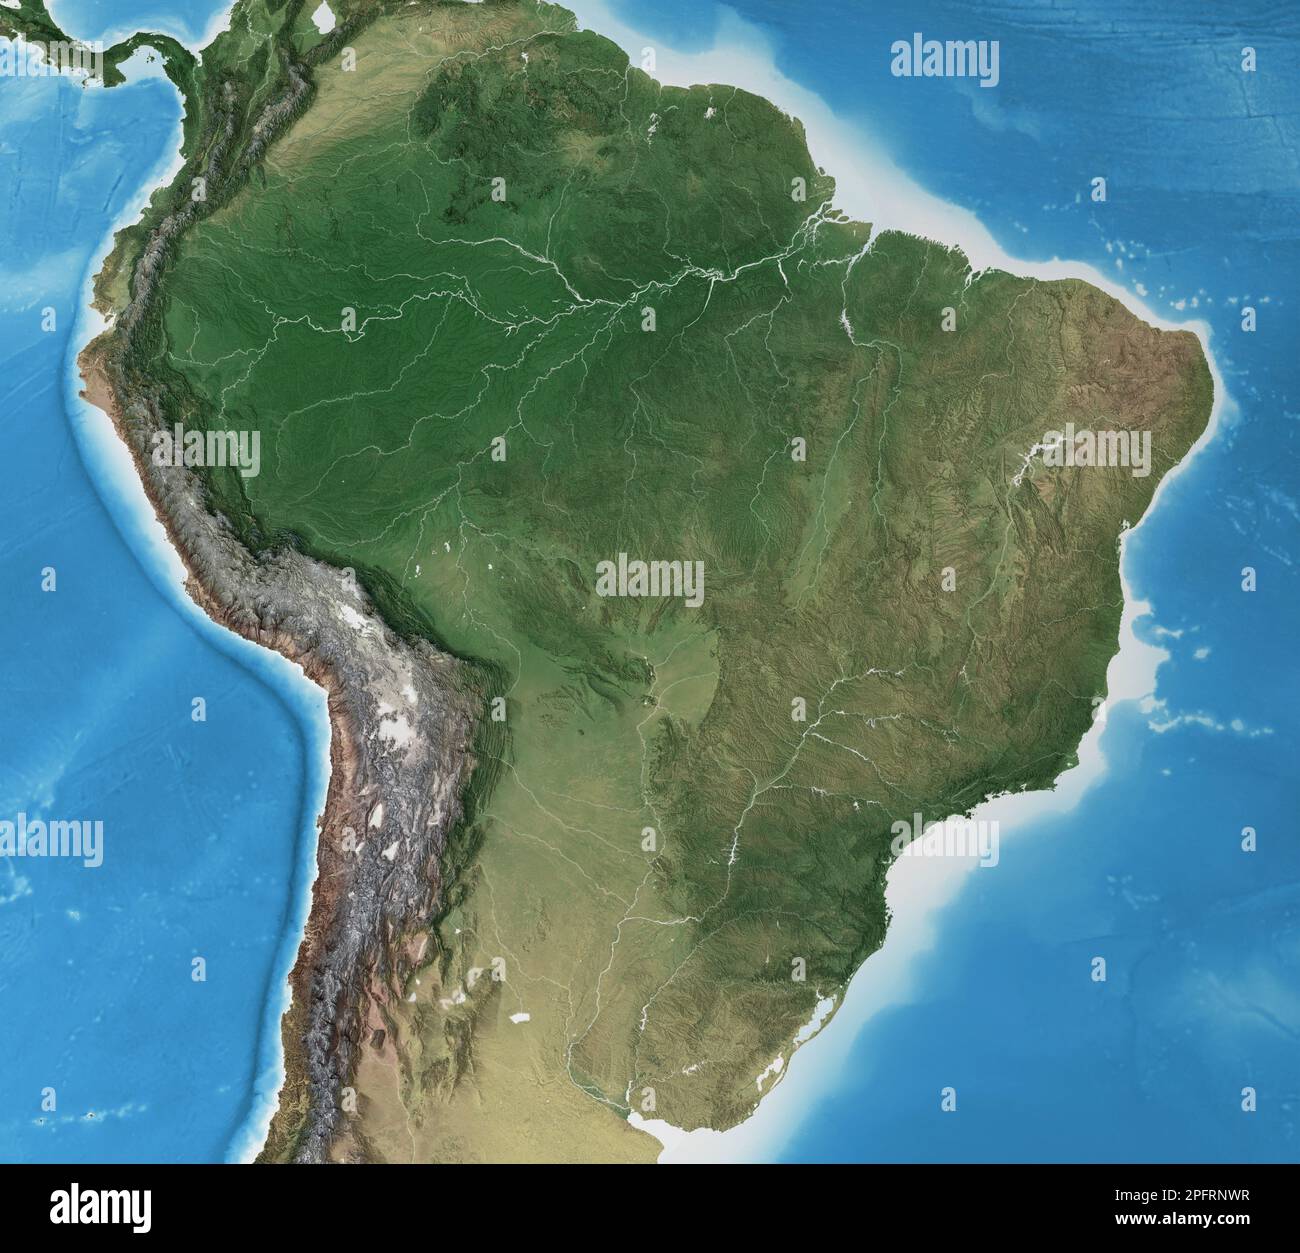 Carte physique du Brésil. Géographie et topographie de la forêt amazonienne. Vue plate détaillée de la planète Terre - éléments fournis par la NASA Banque D'Images